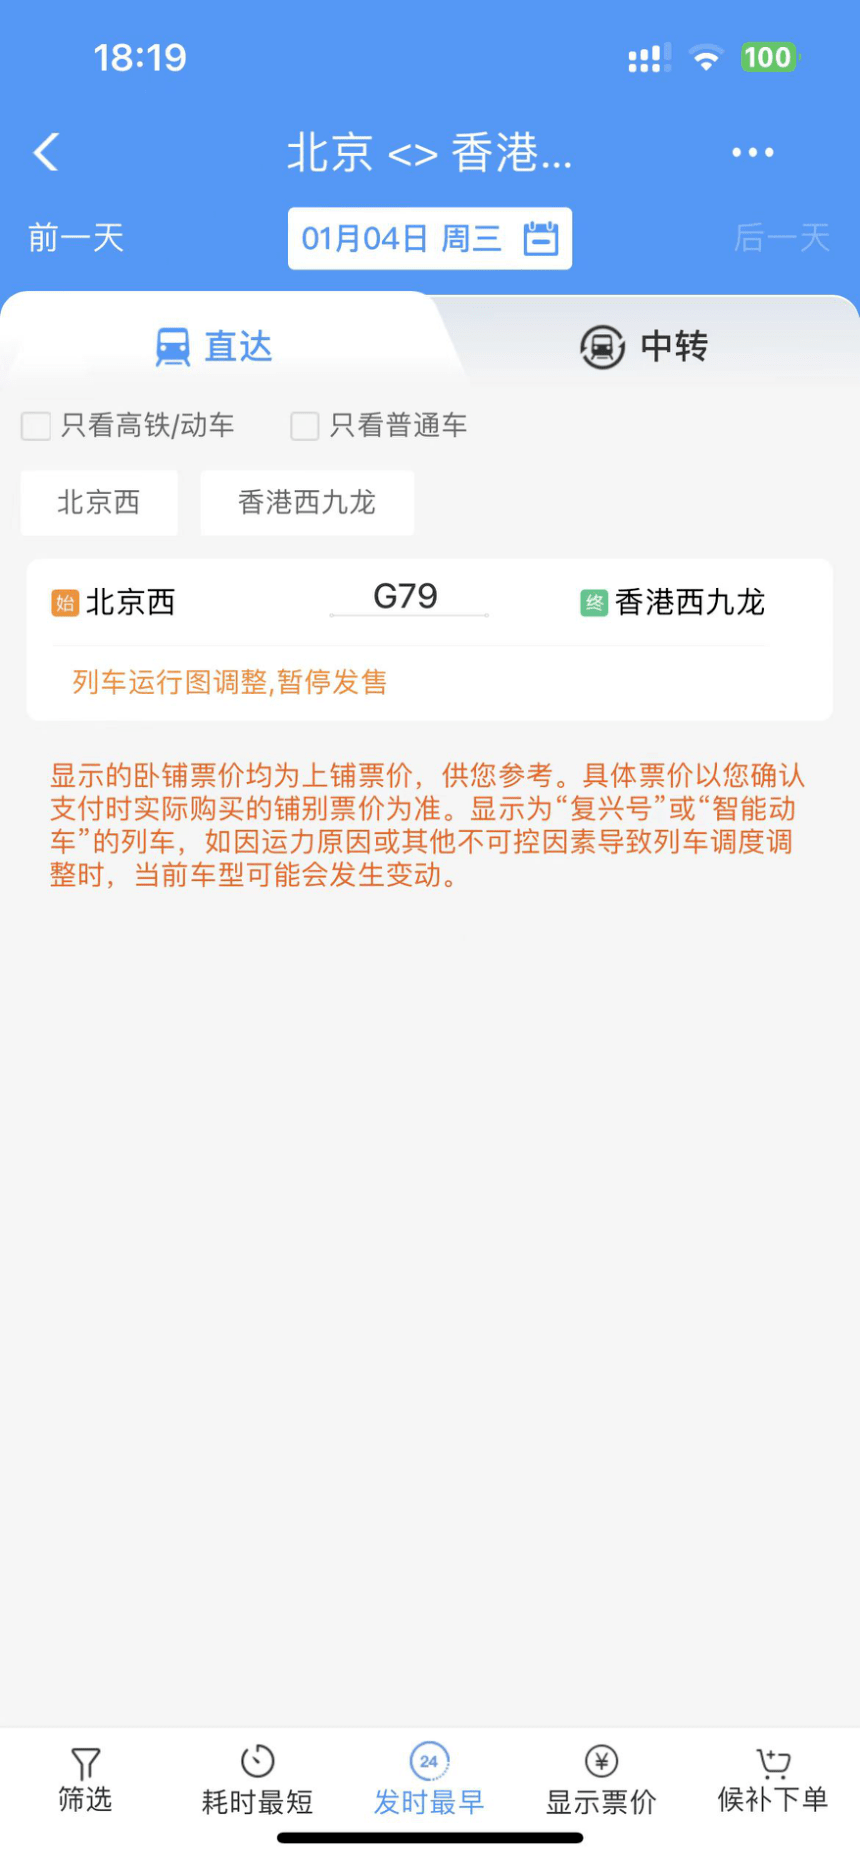 「12306 APP」出现1月4日由北京赴港列车班次，惟未能购买。网上图片